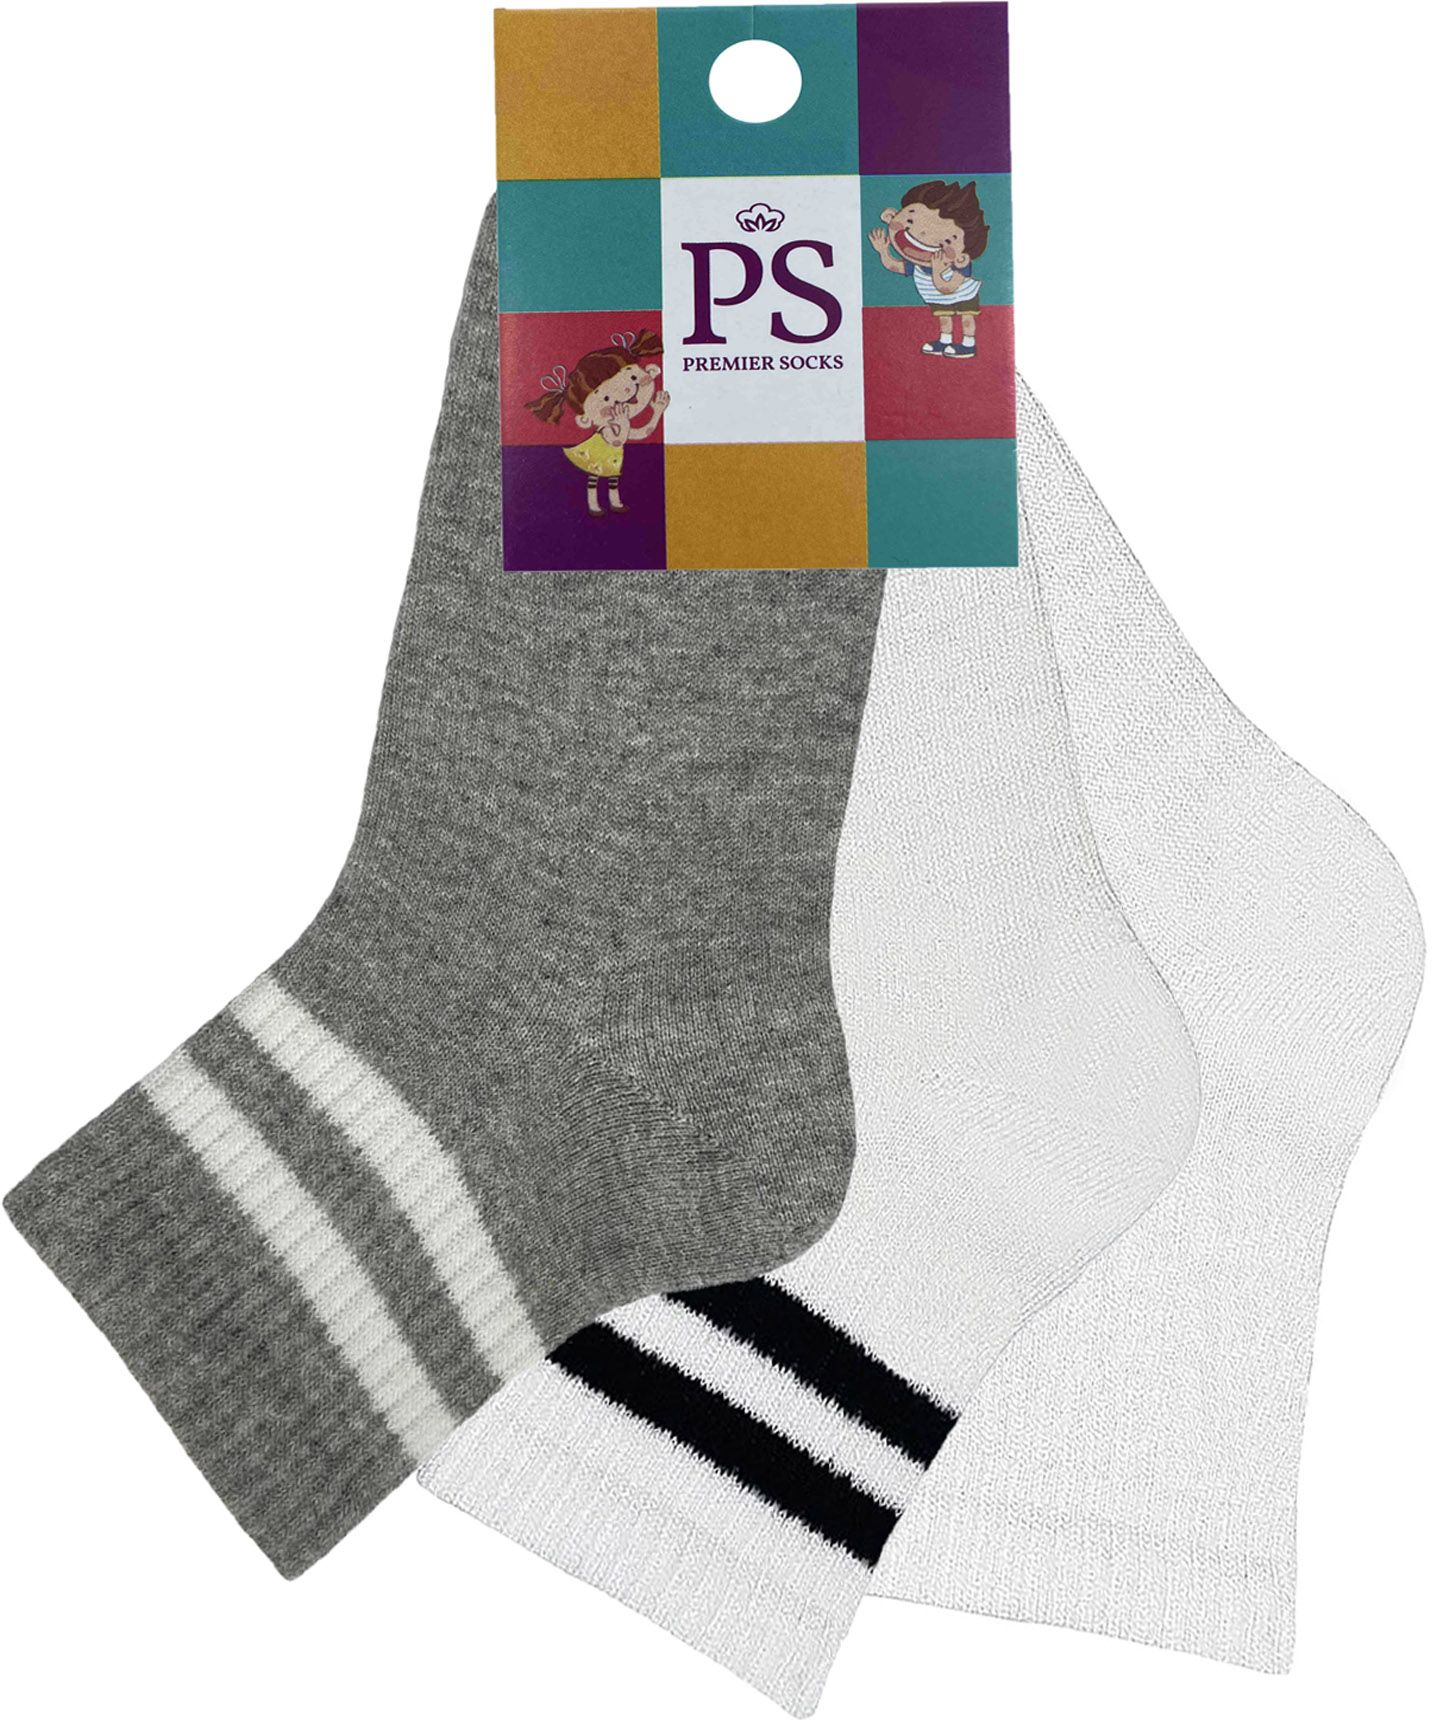 Набір шкарпеток Premier Socks 22-24 3 пари різнокольорові (4820163319926)фото5